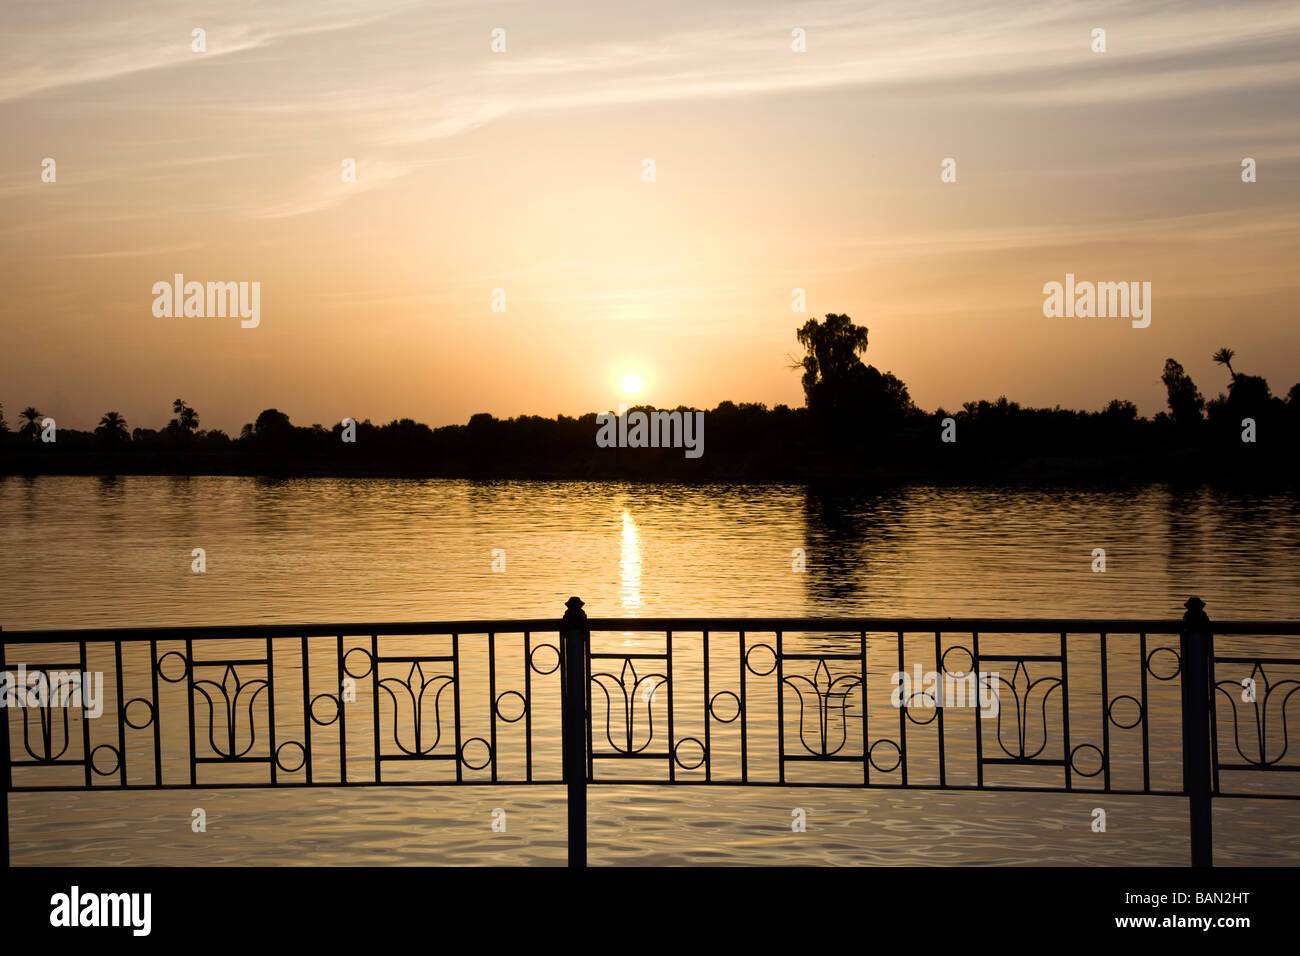 Coucher de soleil sur le Nil Louxor Egypte Afrique Banque D'Images